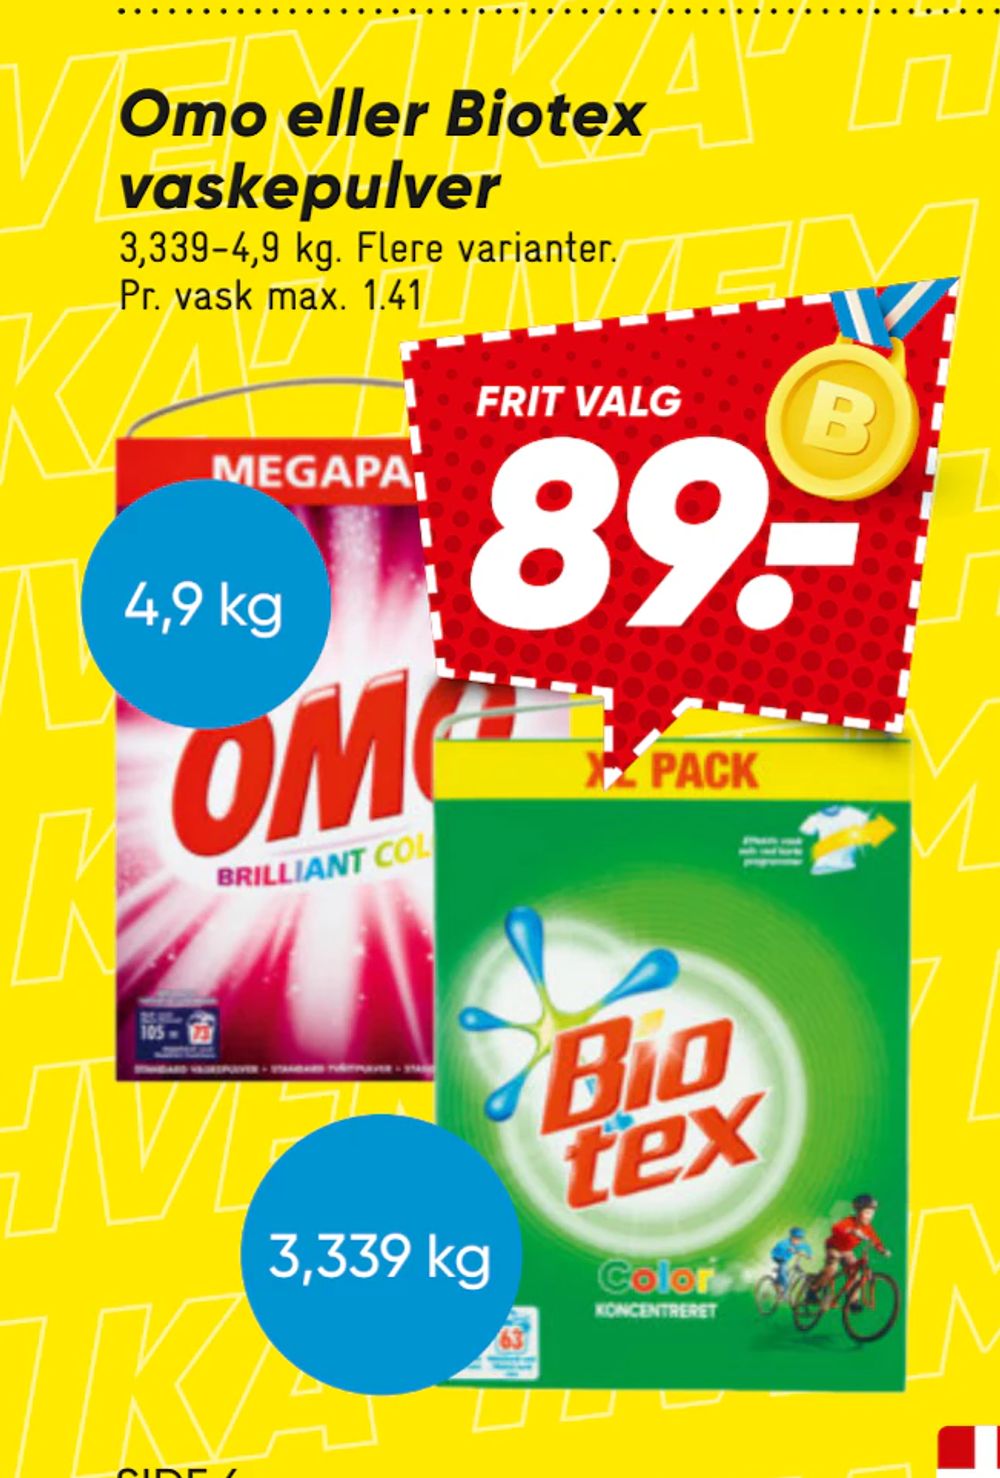 Tilbud på Omo eller Biotex vaskepulver fra Bilka til 89 kr.